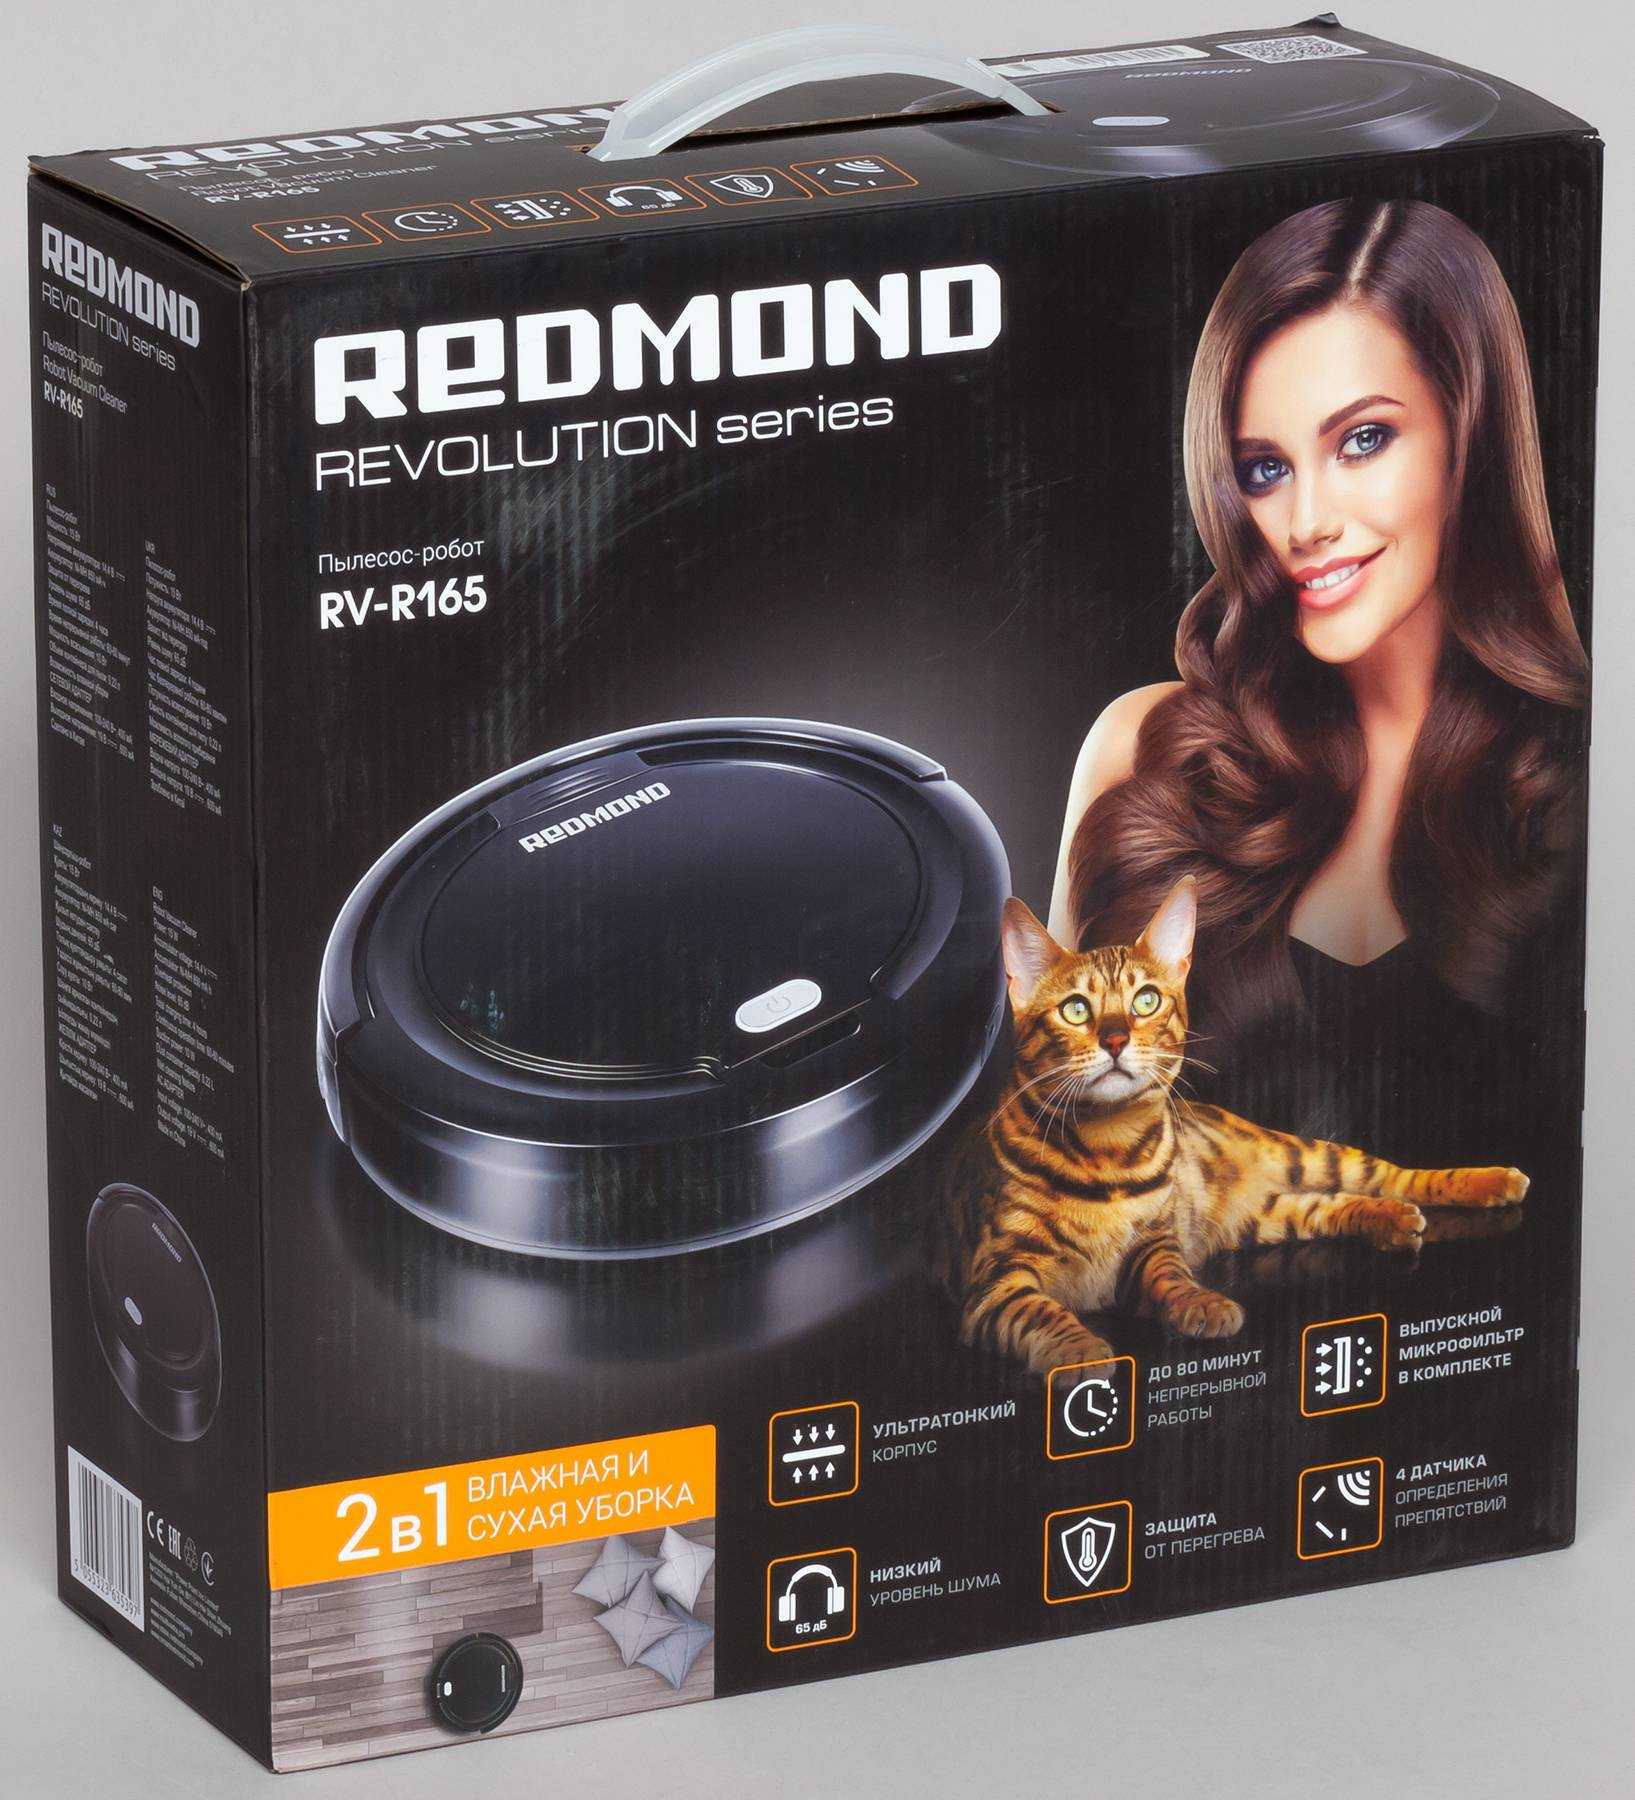 Робот-пылесос redmond rv-r400: отзывы, технические параметры, комплектация, функционал, инструкция по эксплуатации